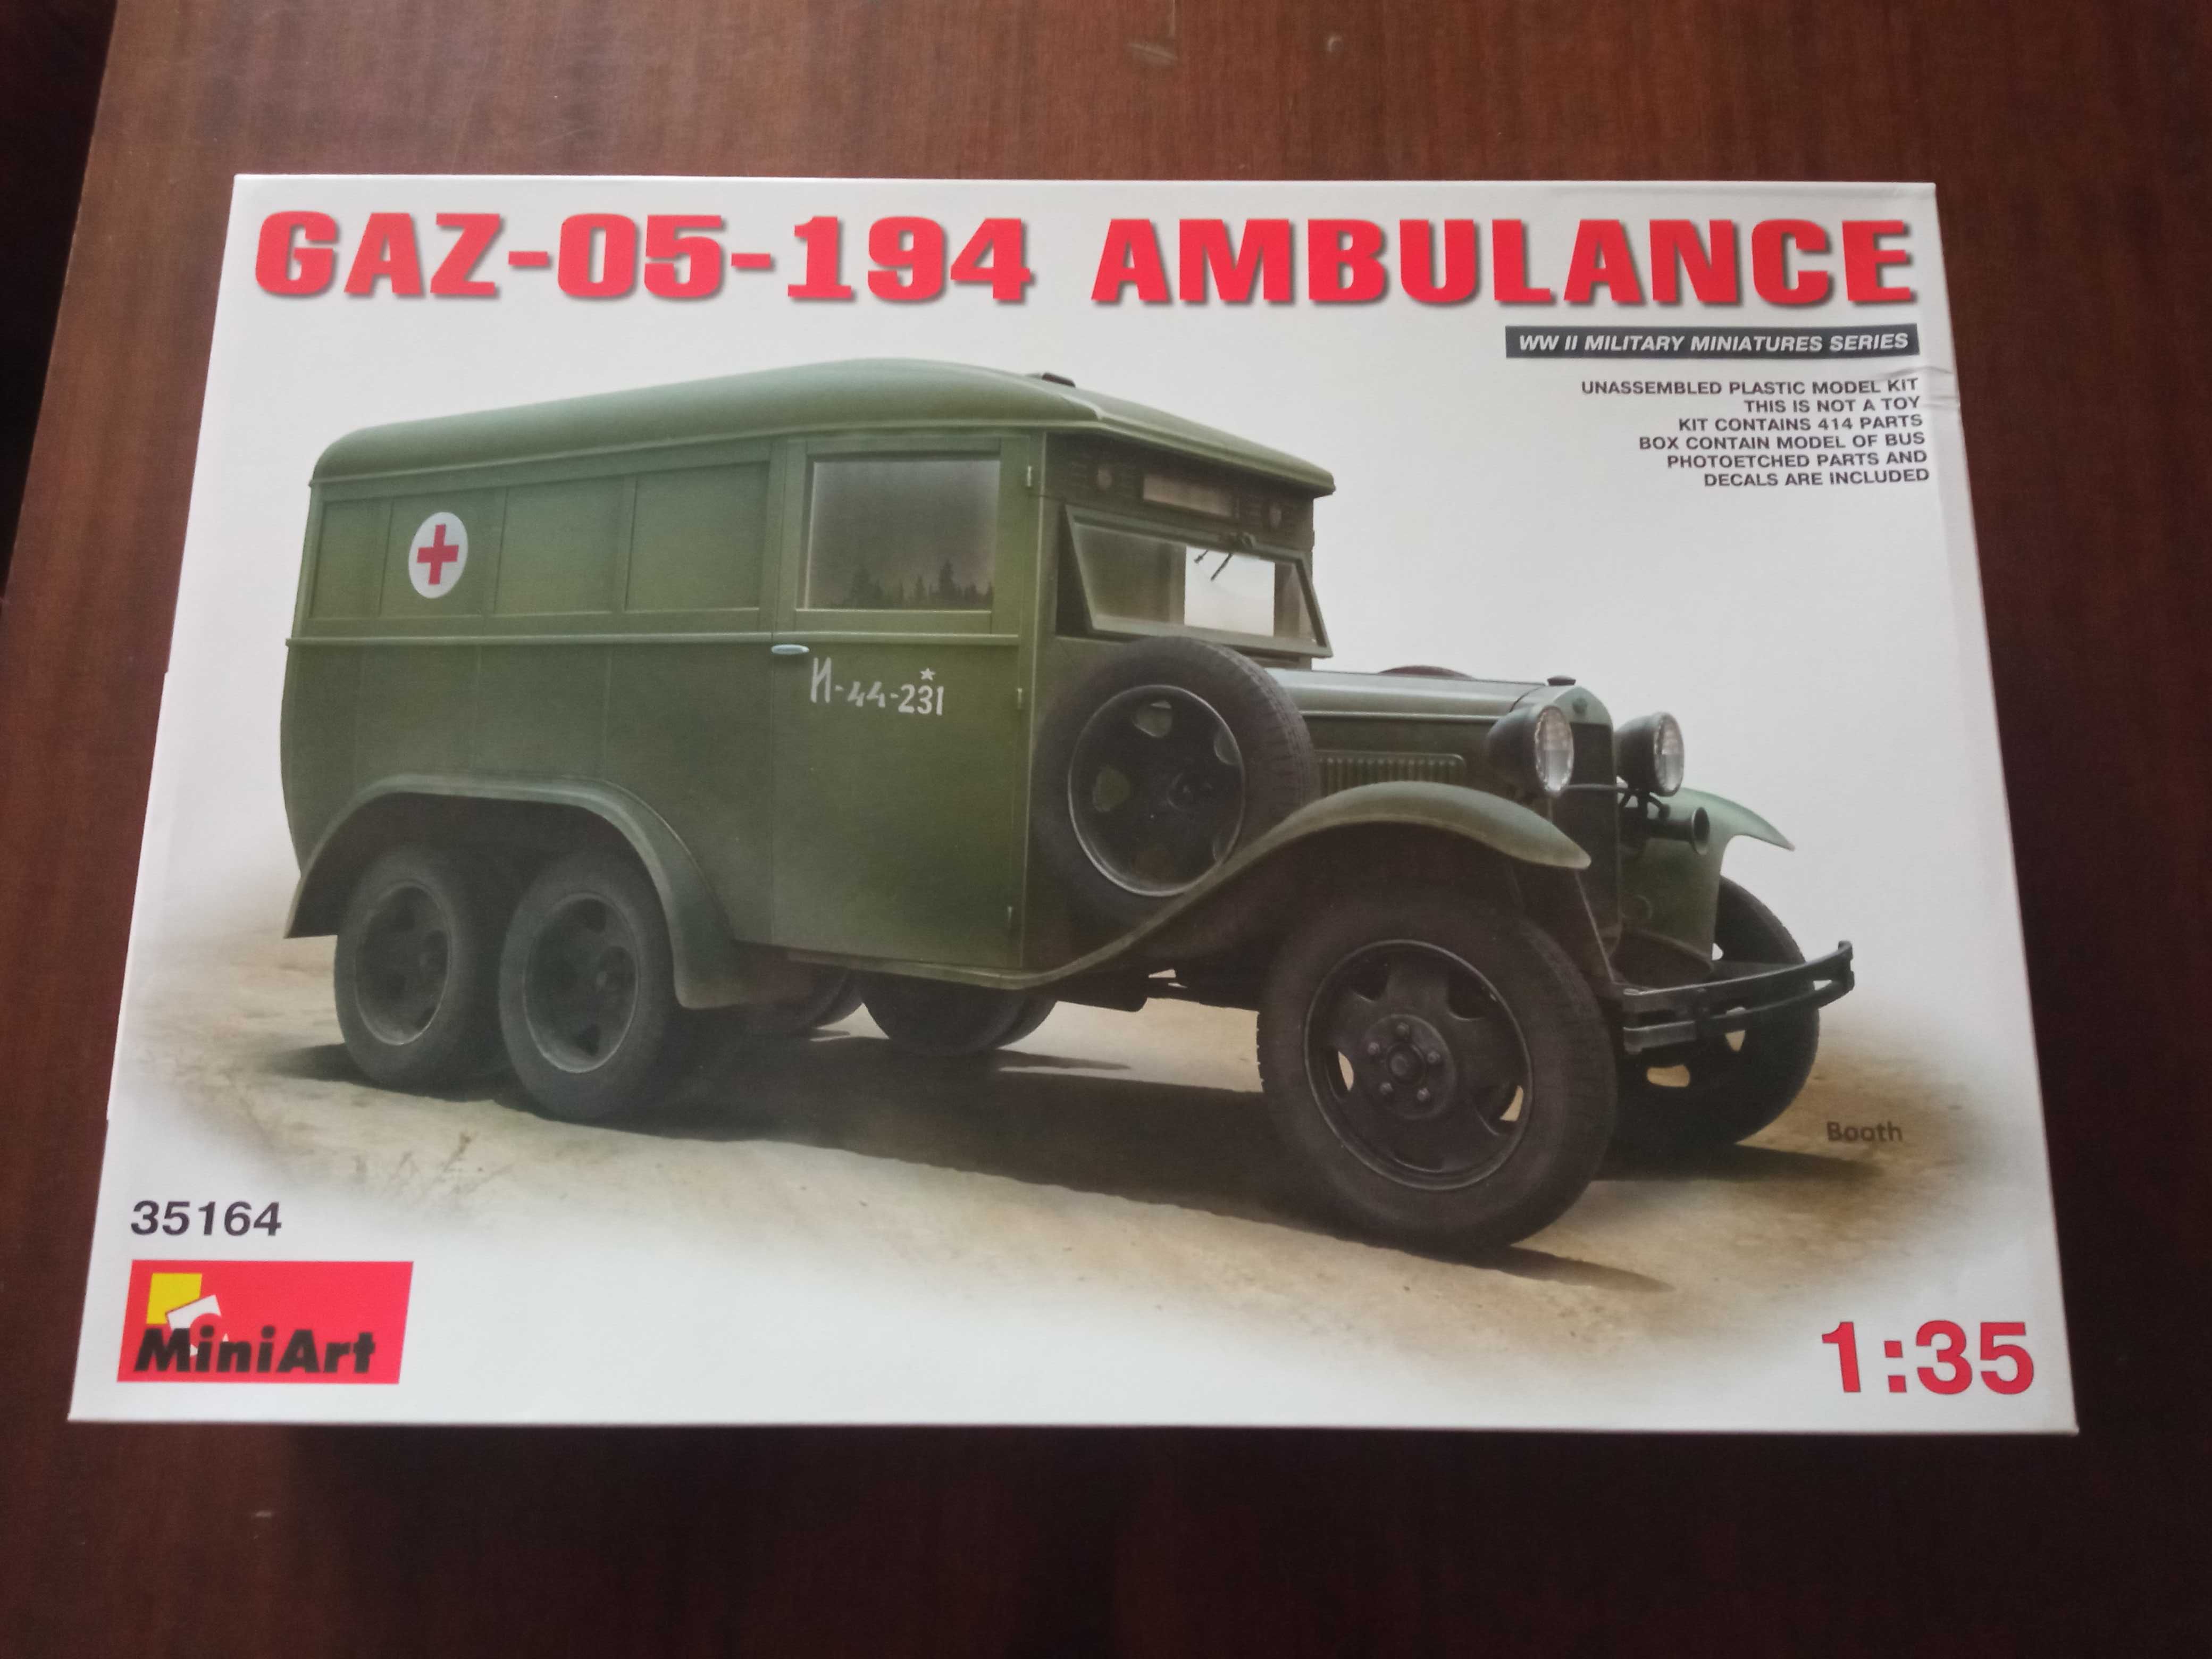 GAZ-05-194 Ambulance - Miniart 35164 (1:35)